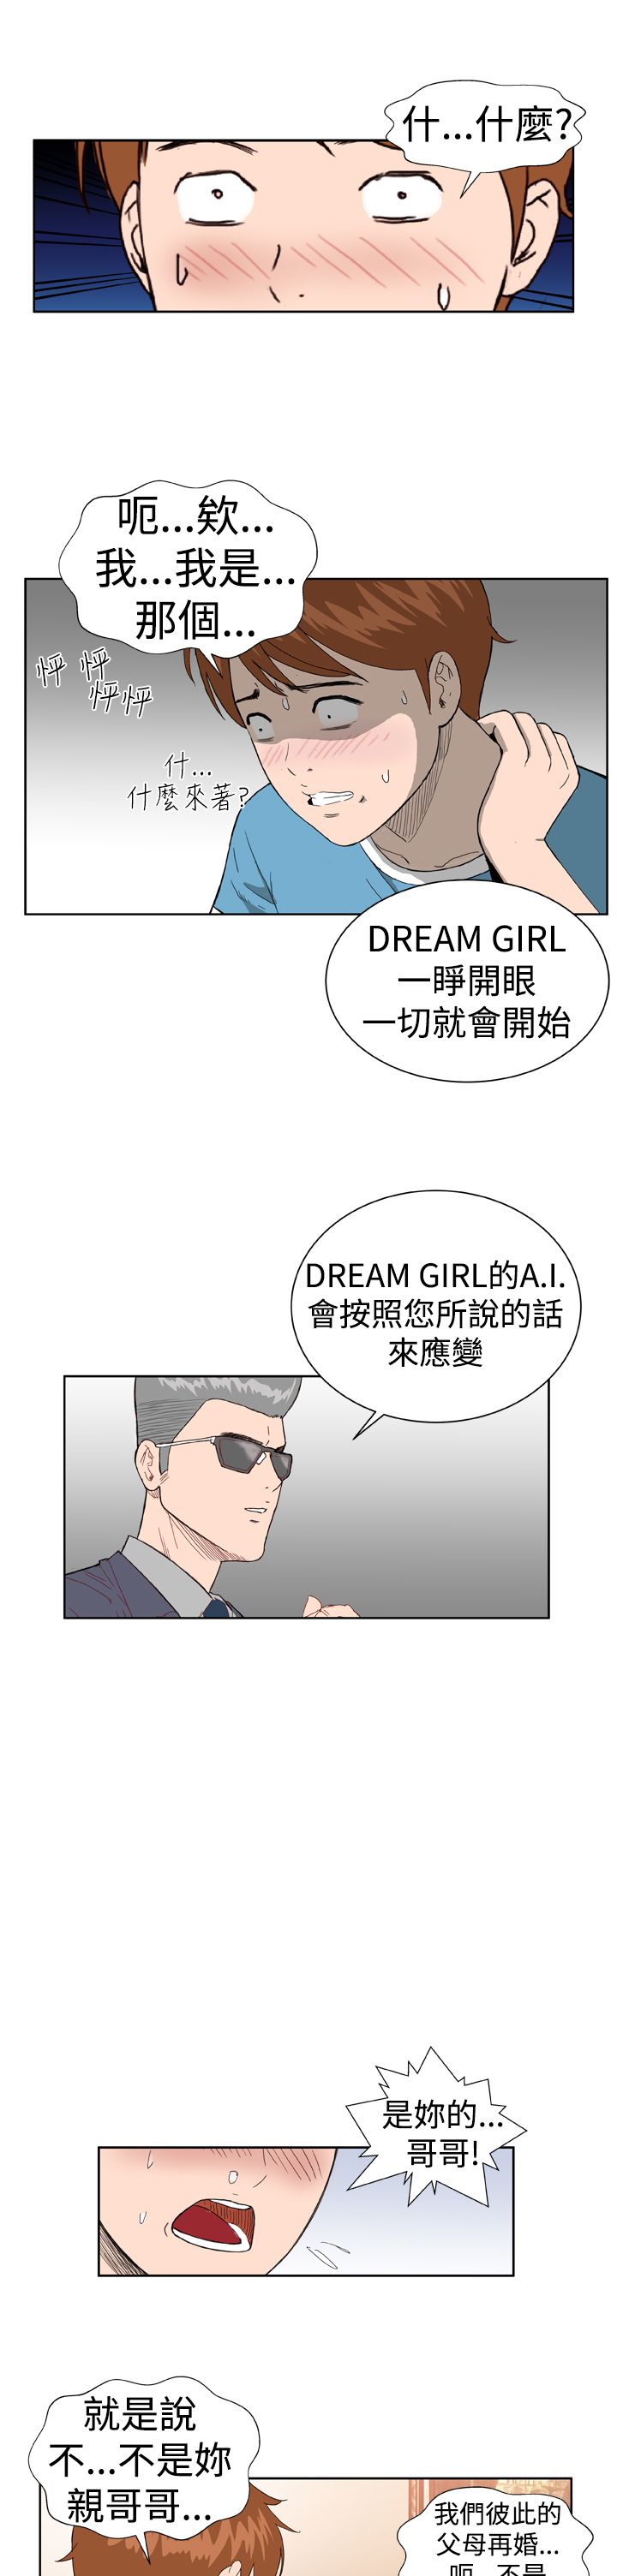 [肆壹零]Dream Girl